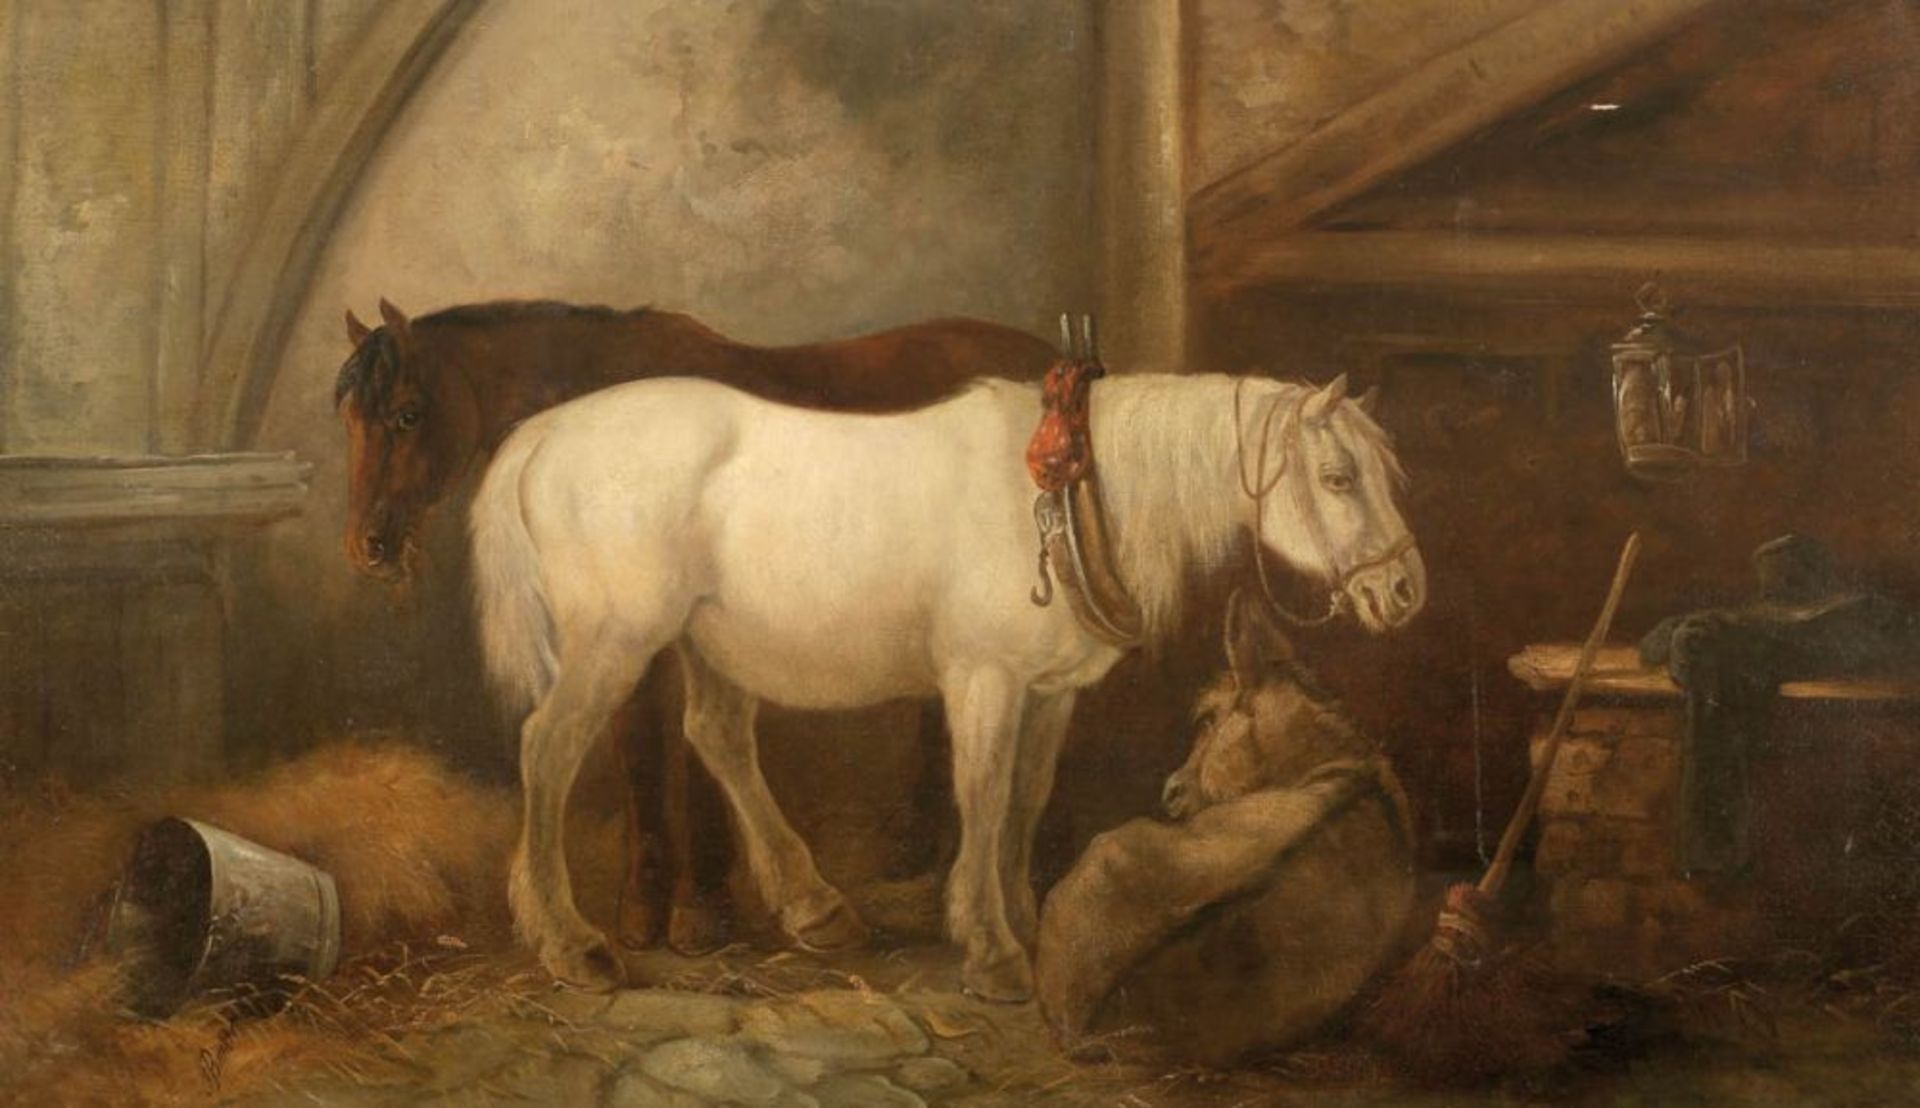 Künstler des 19. Jahrhunderts - Pferde im Stall - Öl/Lwd. 76 x 127 cm. Sign. l. u.: G. Barker (?).